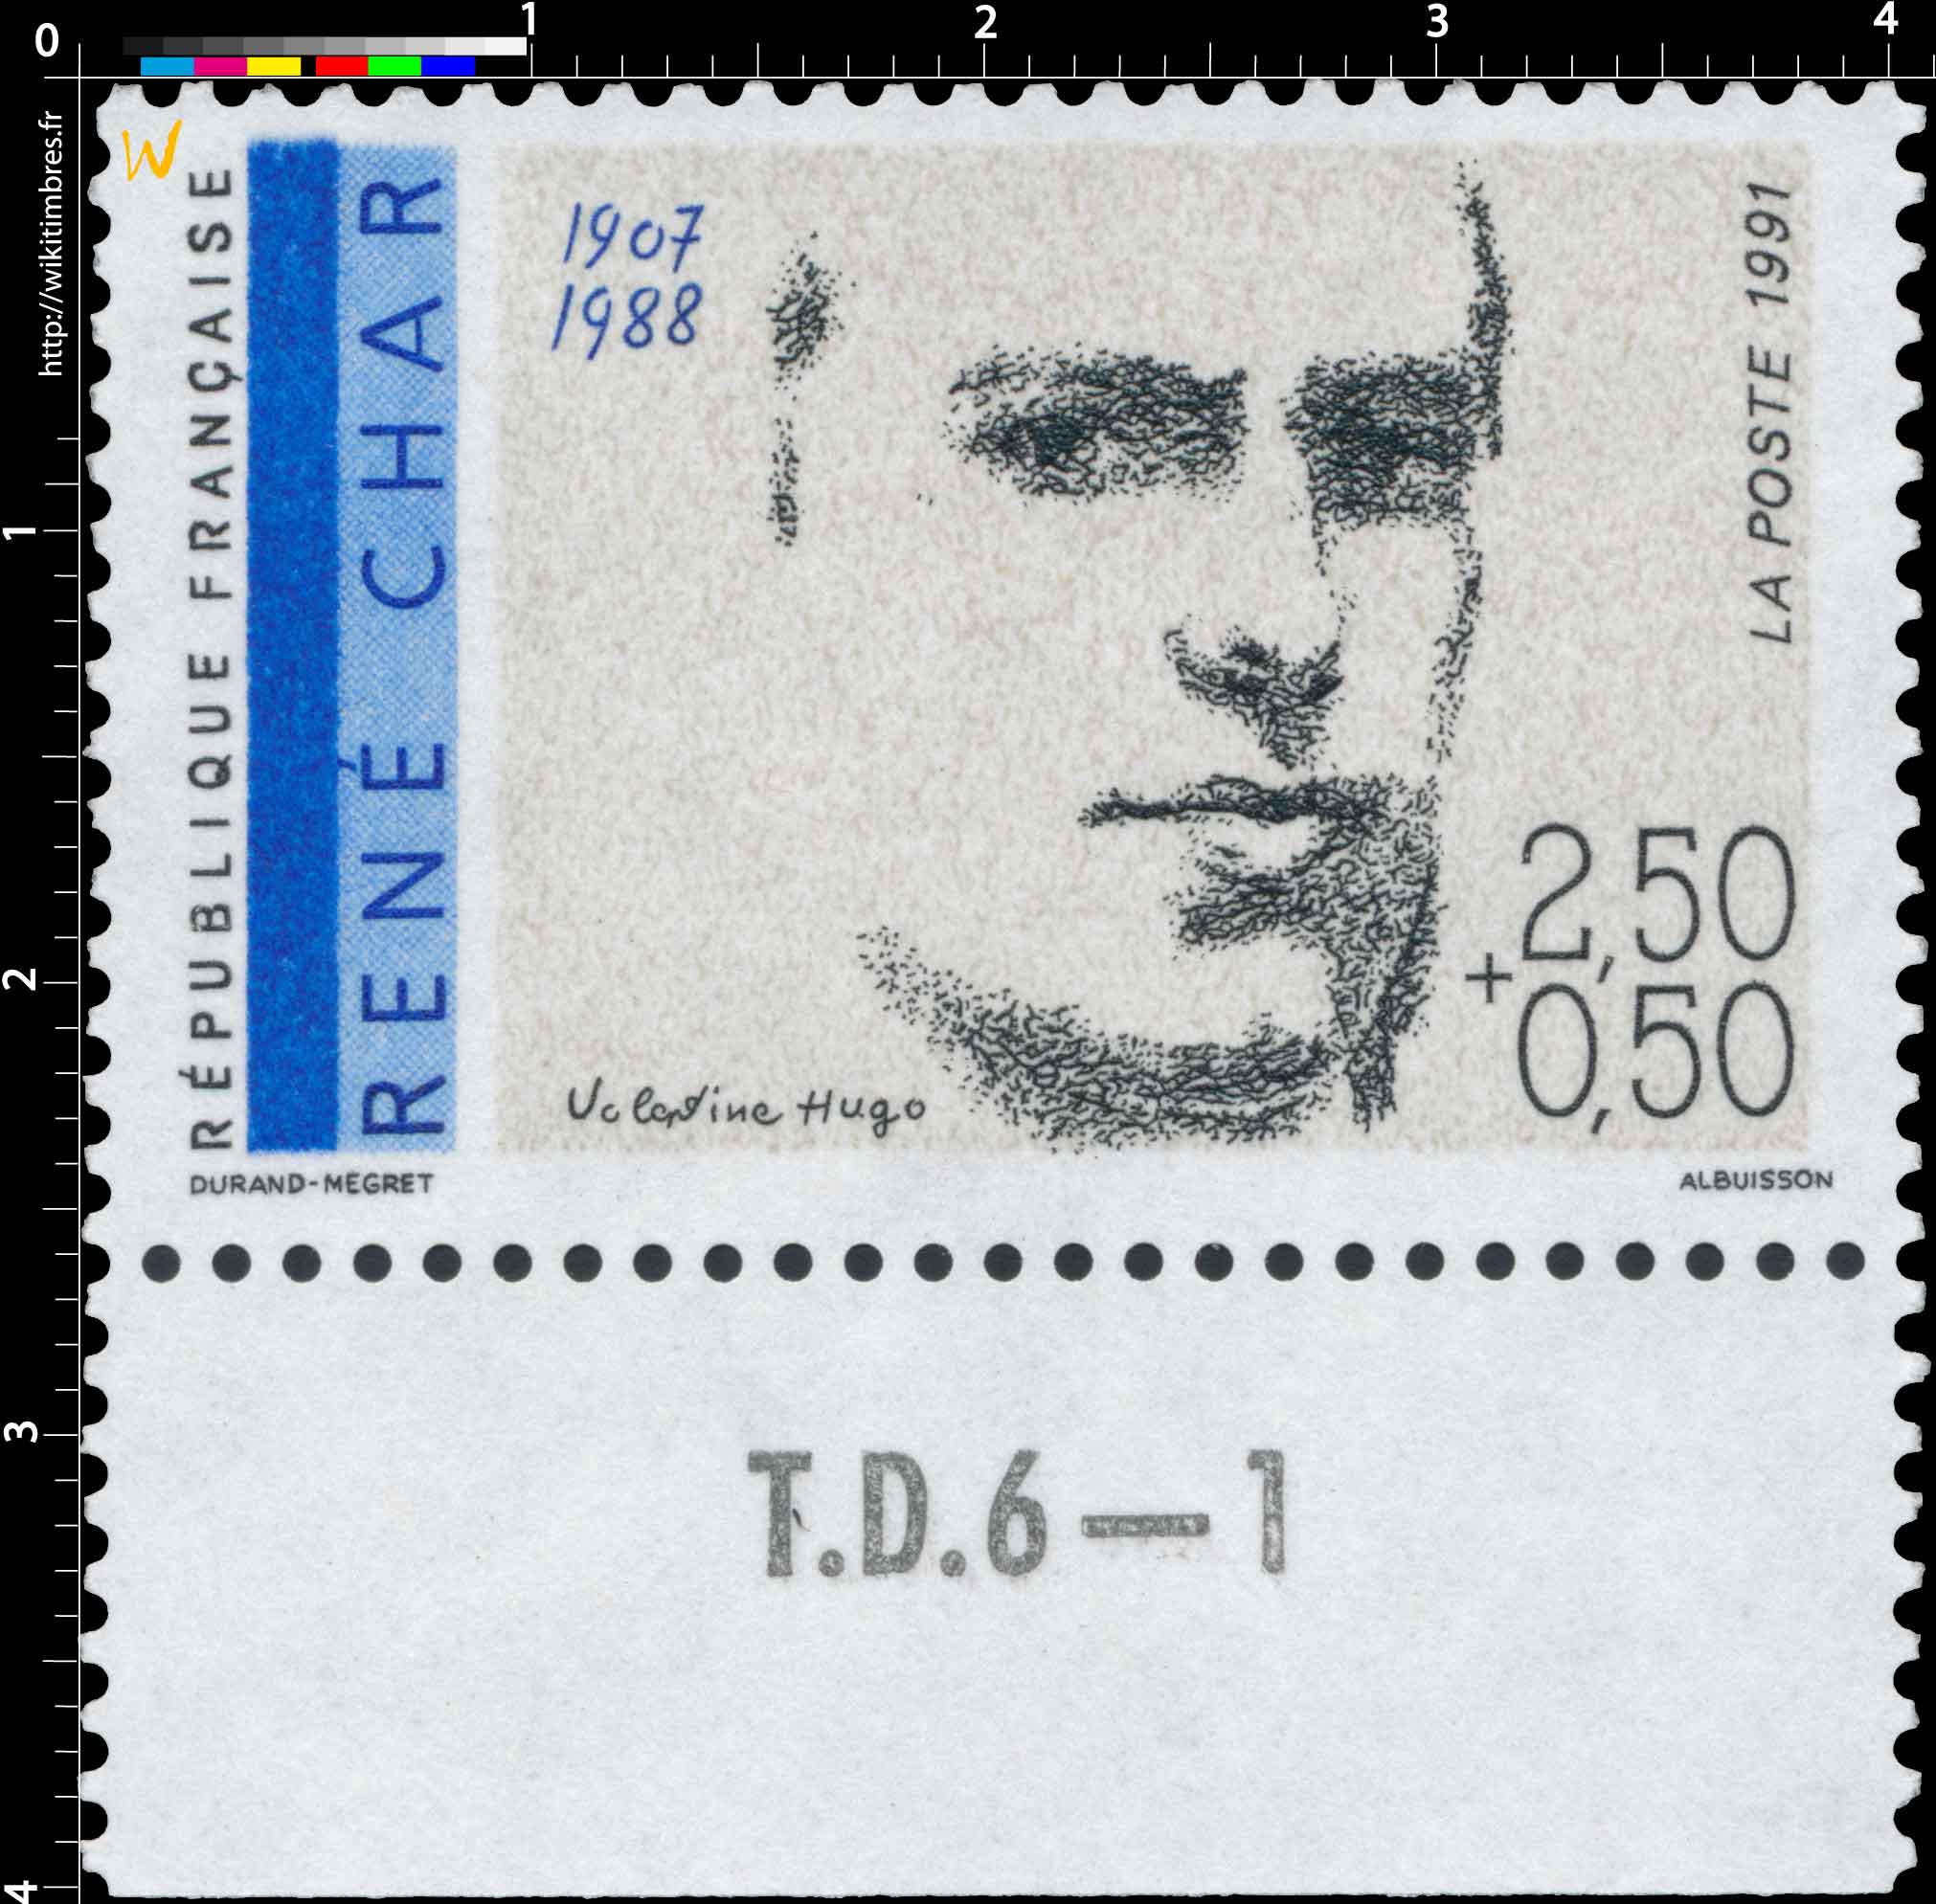 1991 RENÉ CHAR 1907-1988